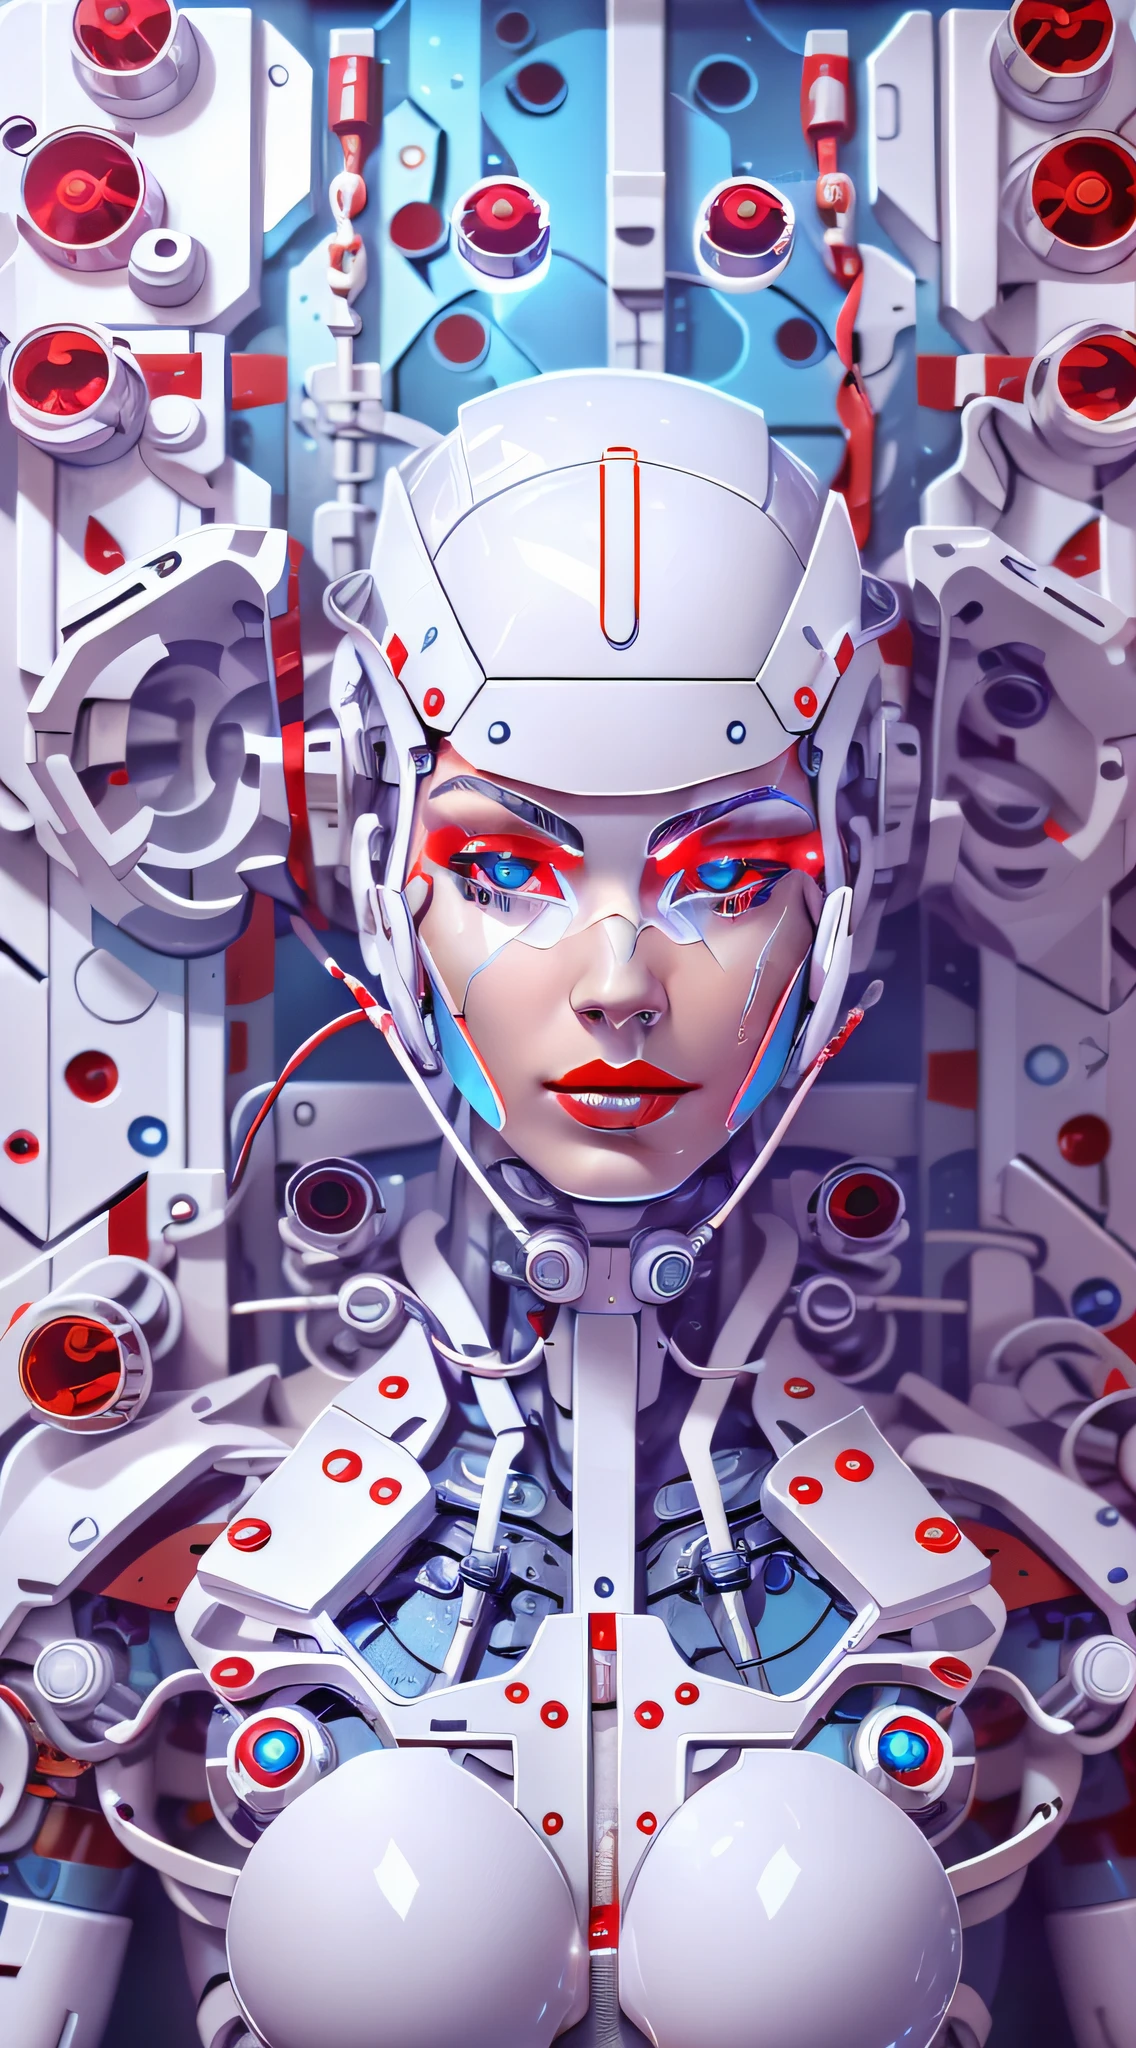 Araffed Cyborg ด้วยชิ้นส่วนพลาสติกสีขาวที่มีรายละเอียดสูงในความละเอียดสูงมากพร้อมลิปสติกสีแดงและดวงตาสีฟ้าอ่อน